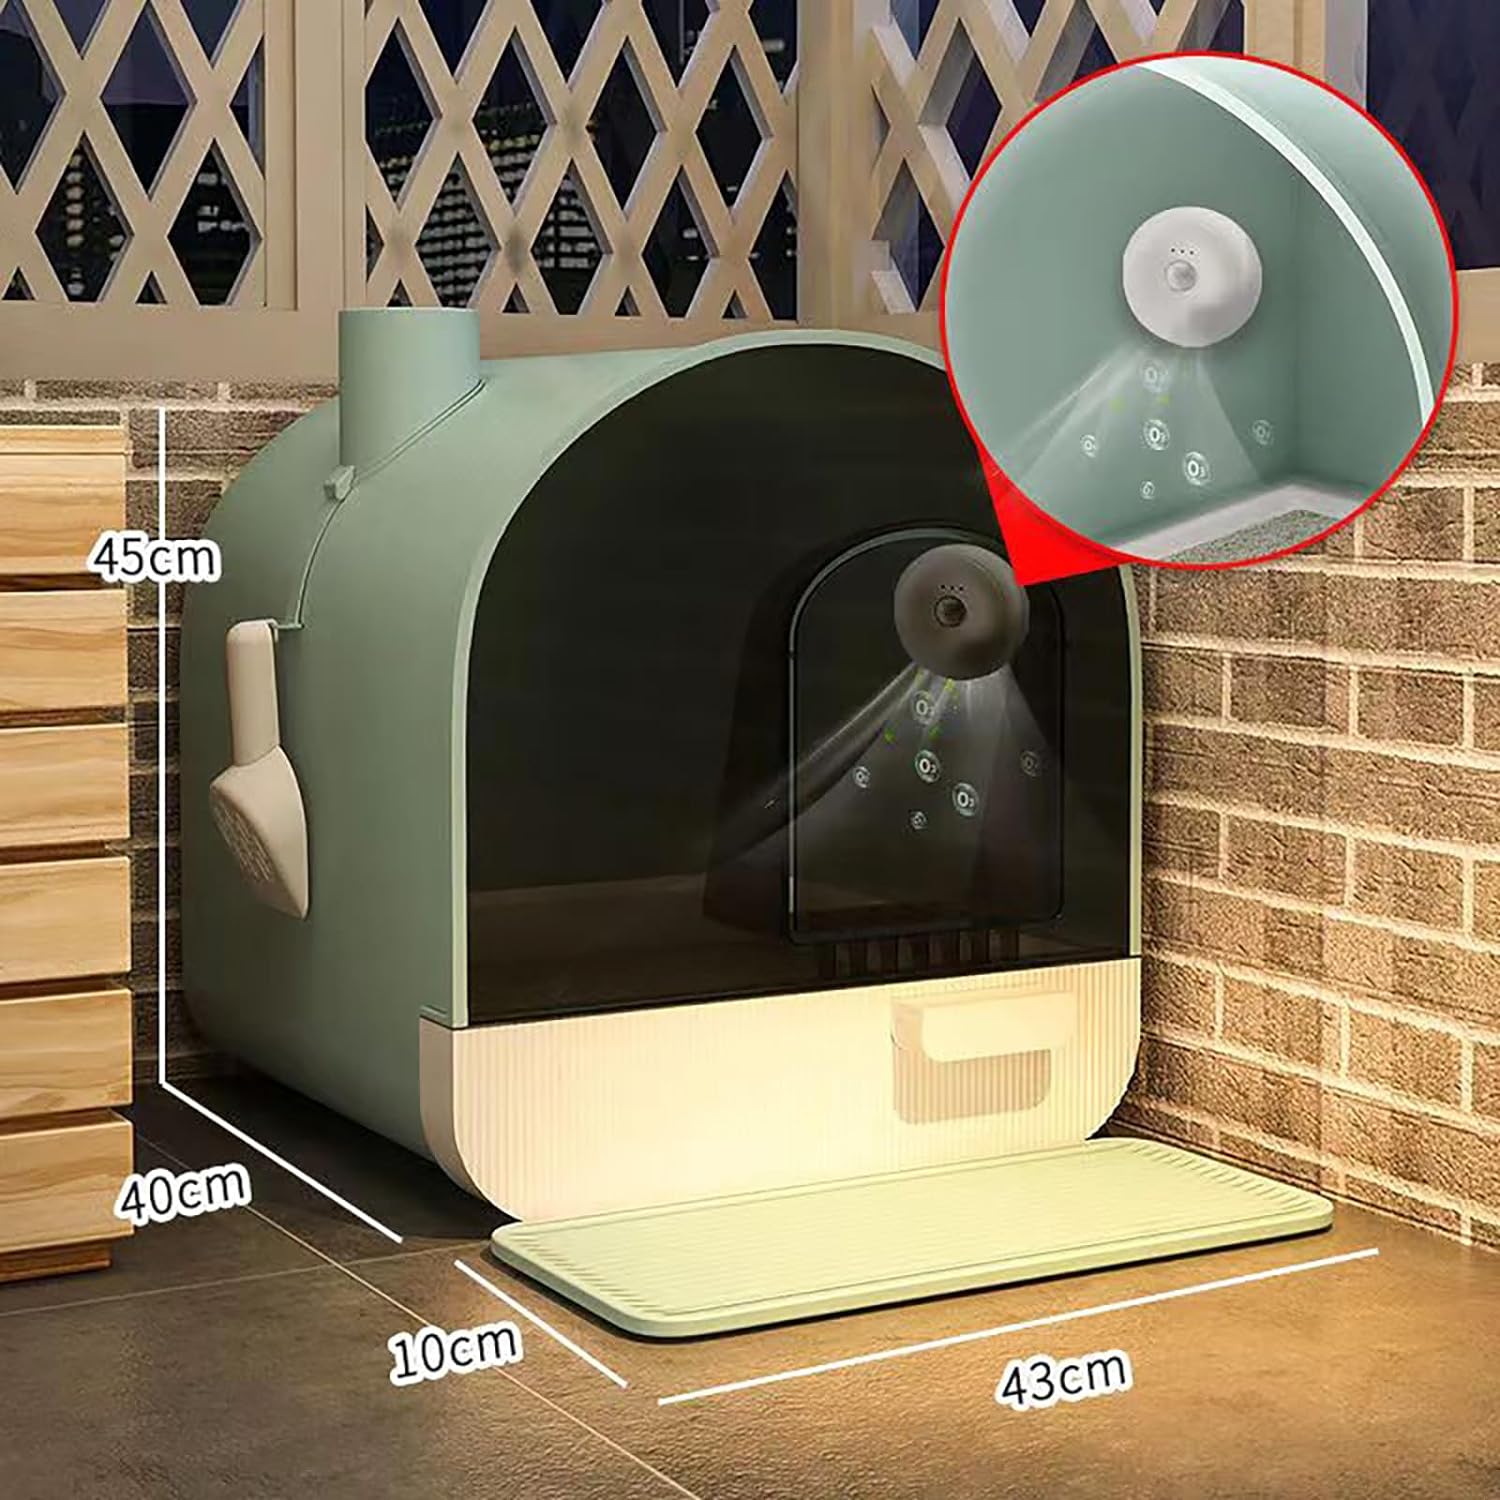 جعبه خاک گربه ضد پاشش از نوع کشو یی ، کاملاً محصور با دستگاه تصفیه بو و بو زدایی برند: Generic کد : X 1700